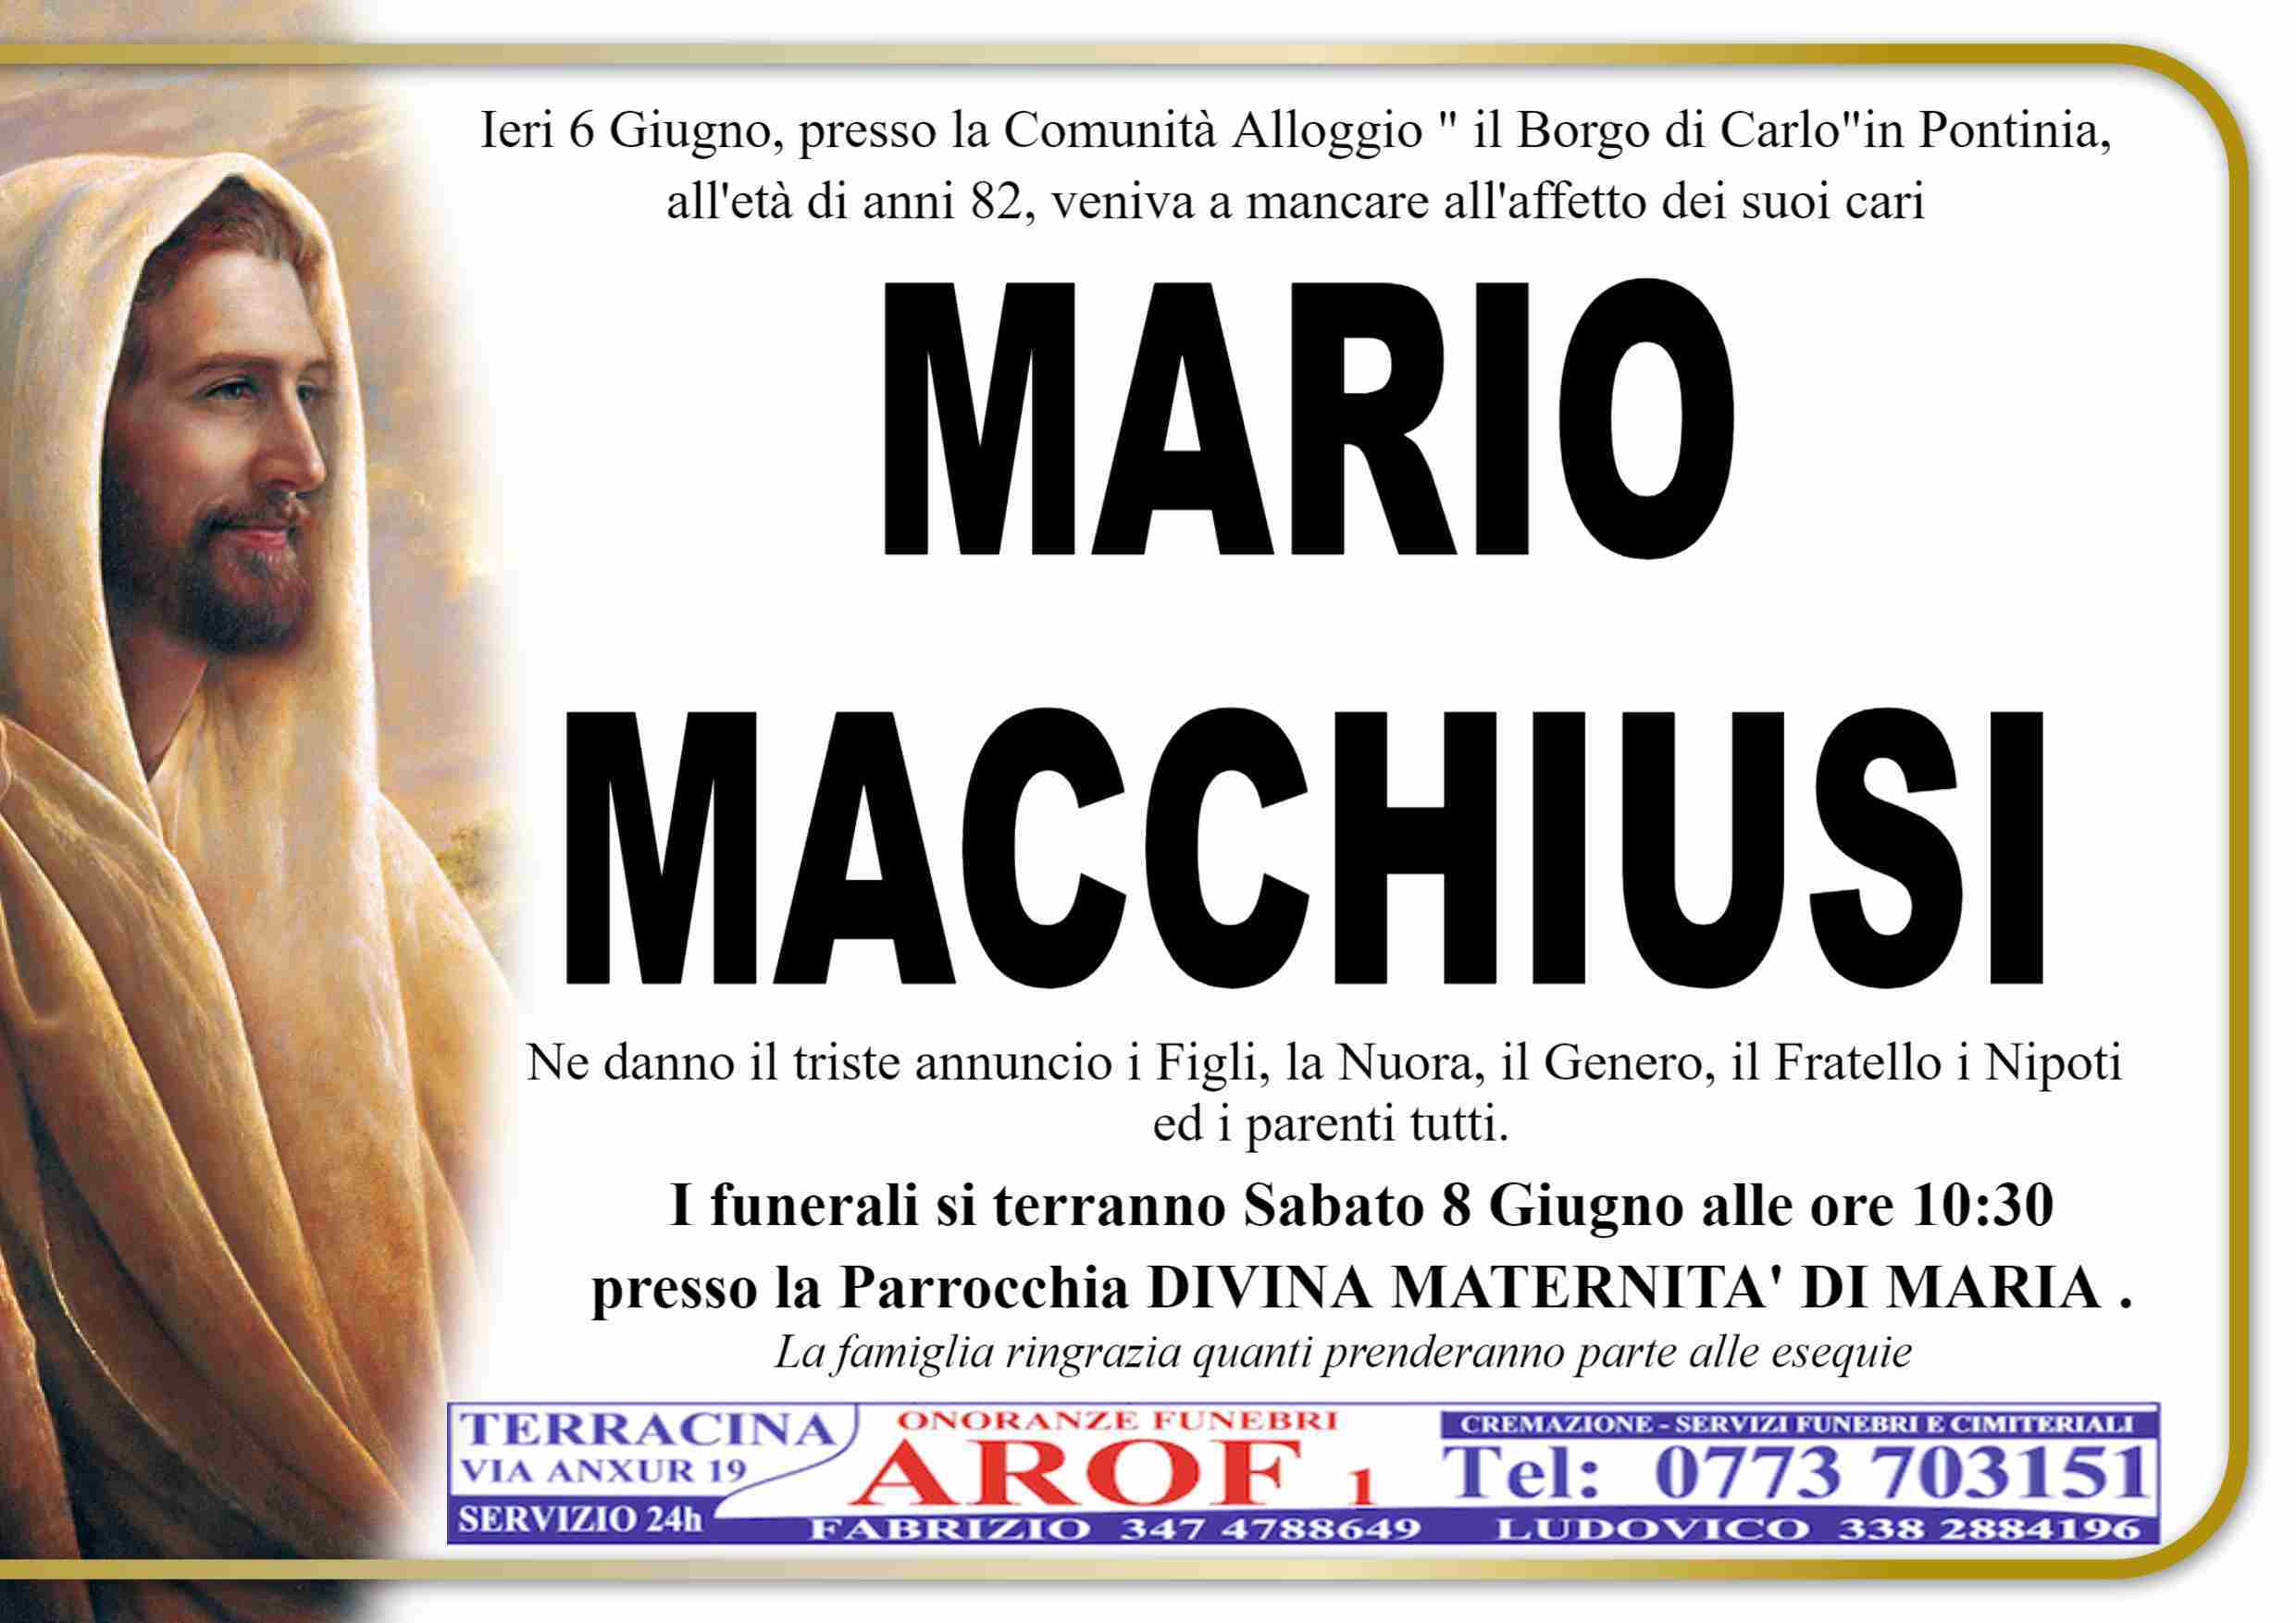 Mario Macchiusi